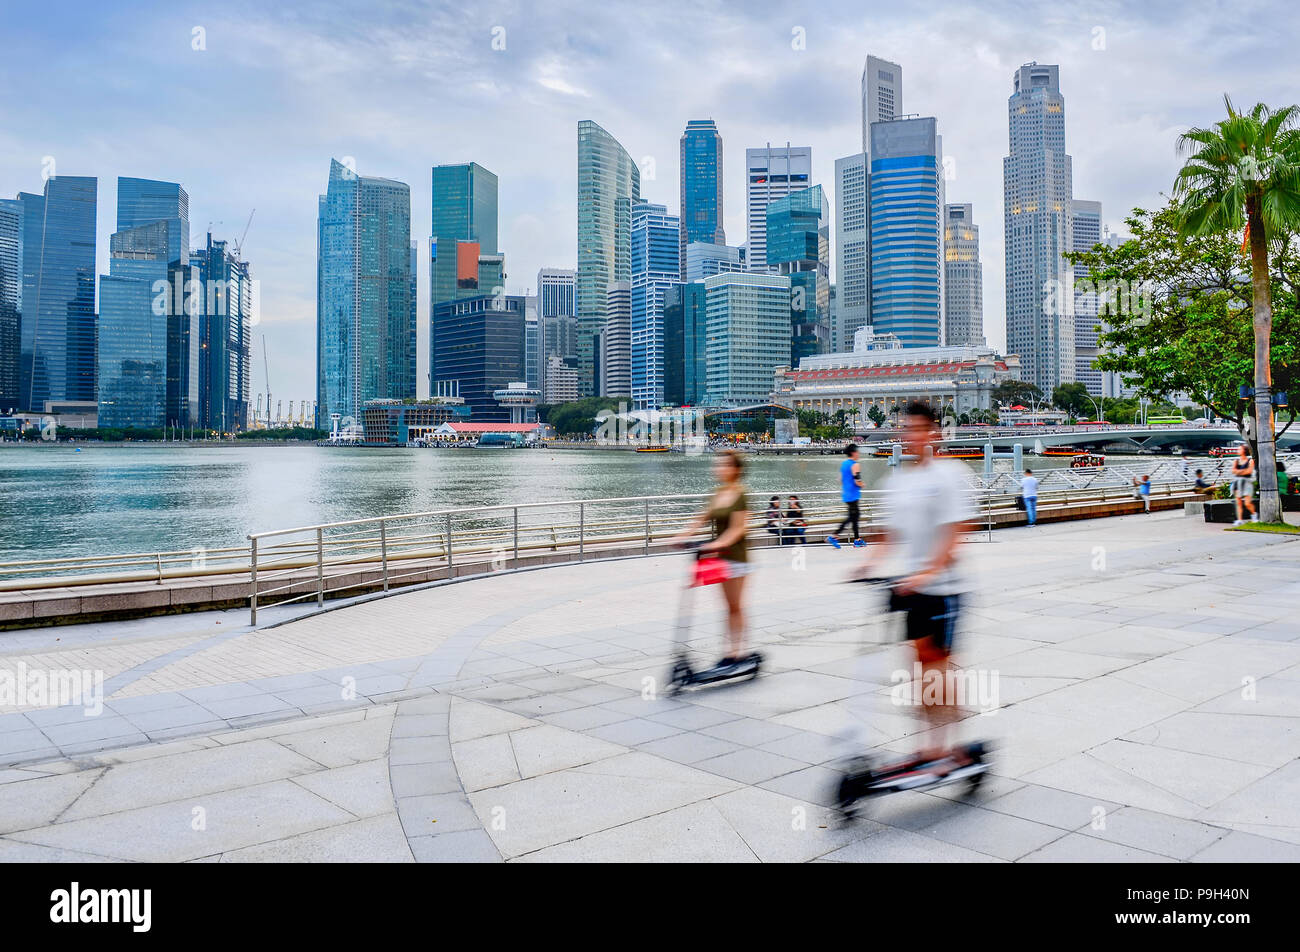 Moderno skyline di Singapore con grattacieli, persone a cavallo kick scooters in città embankment Foto Stock